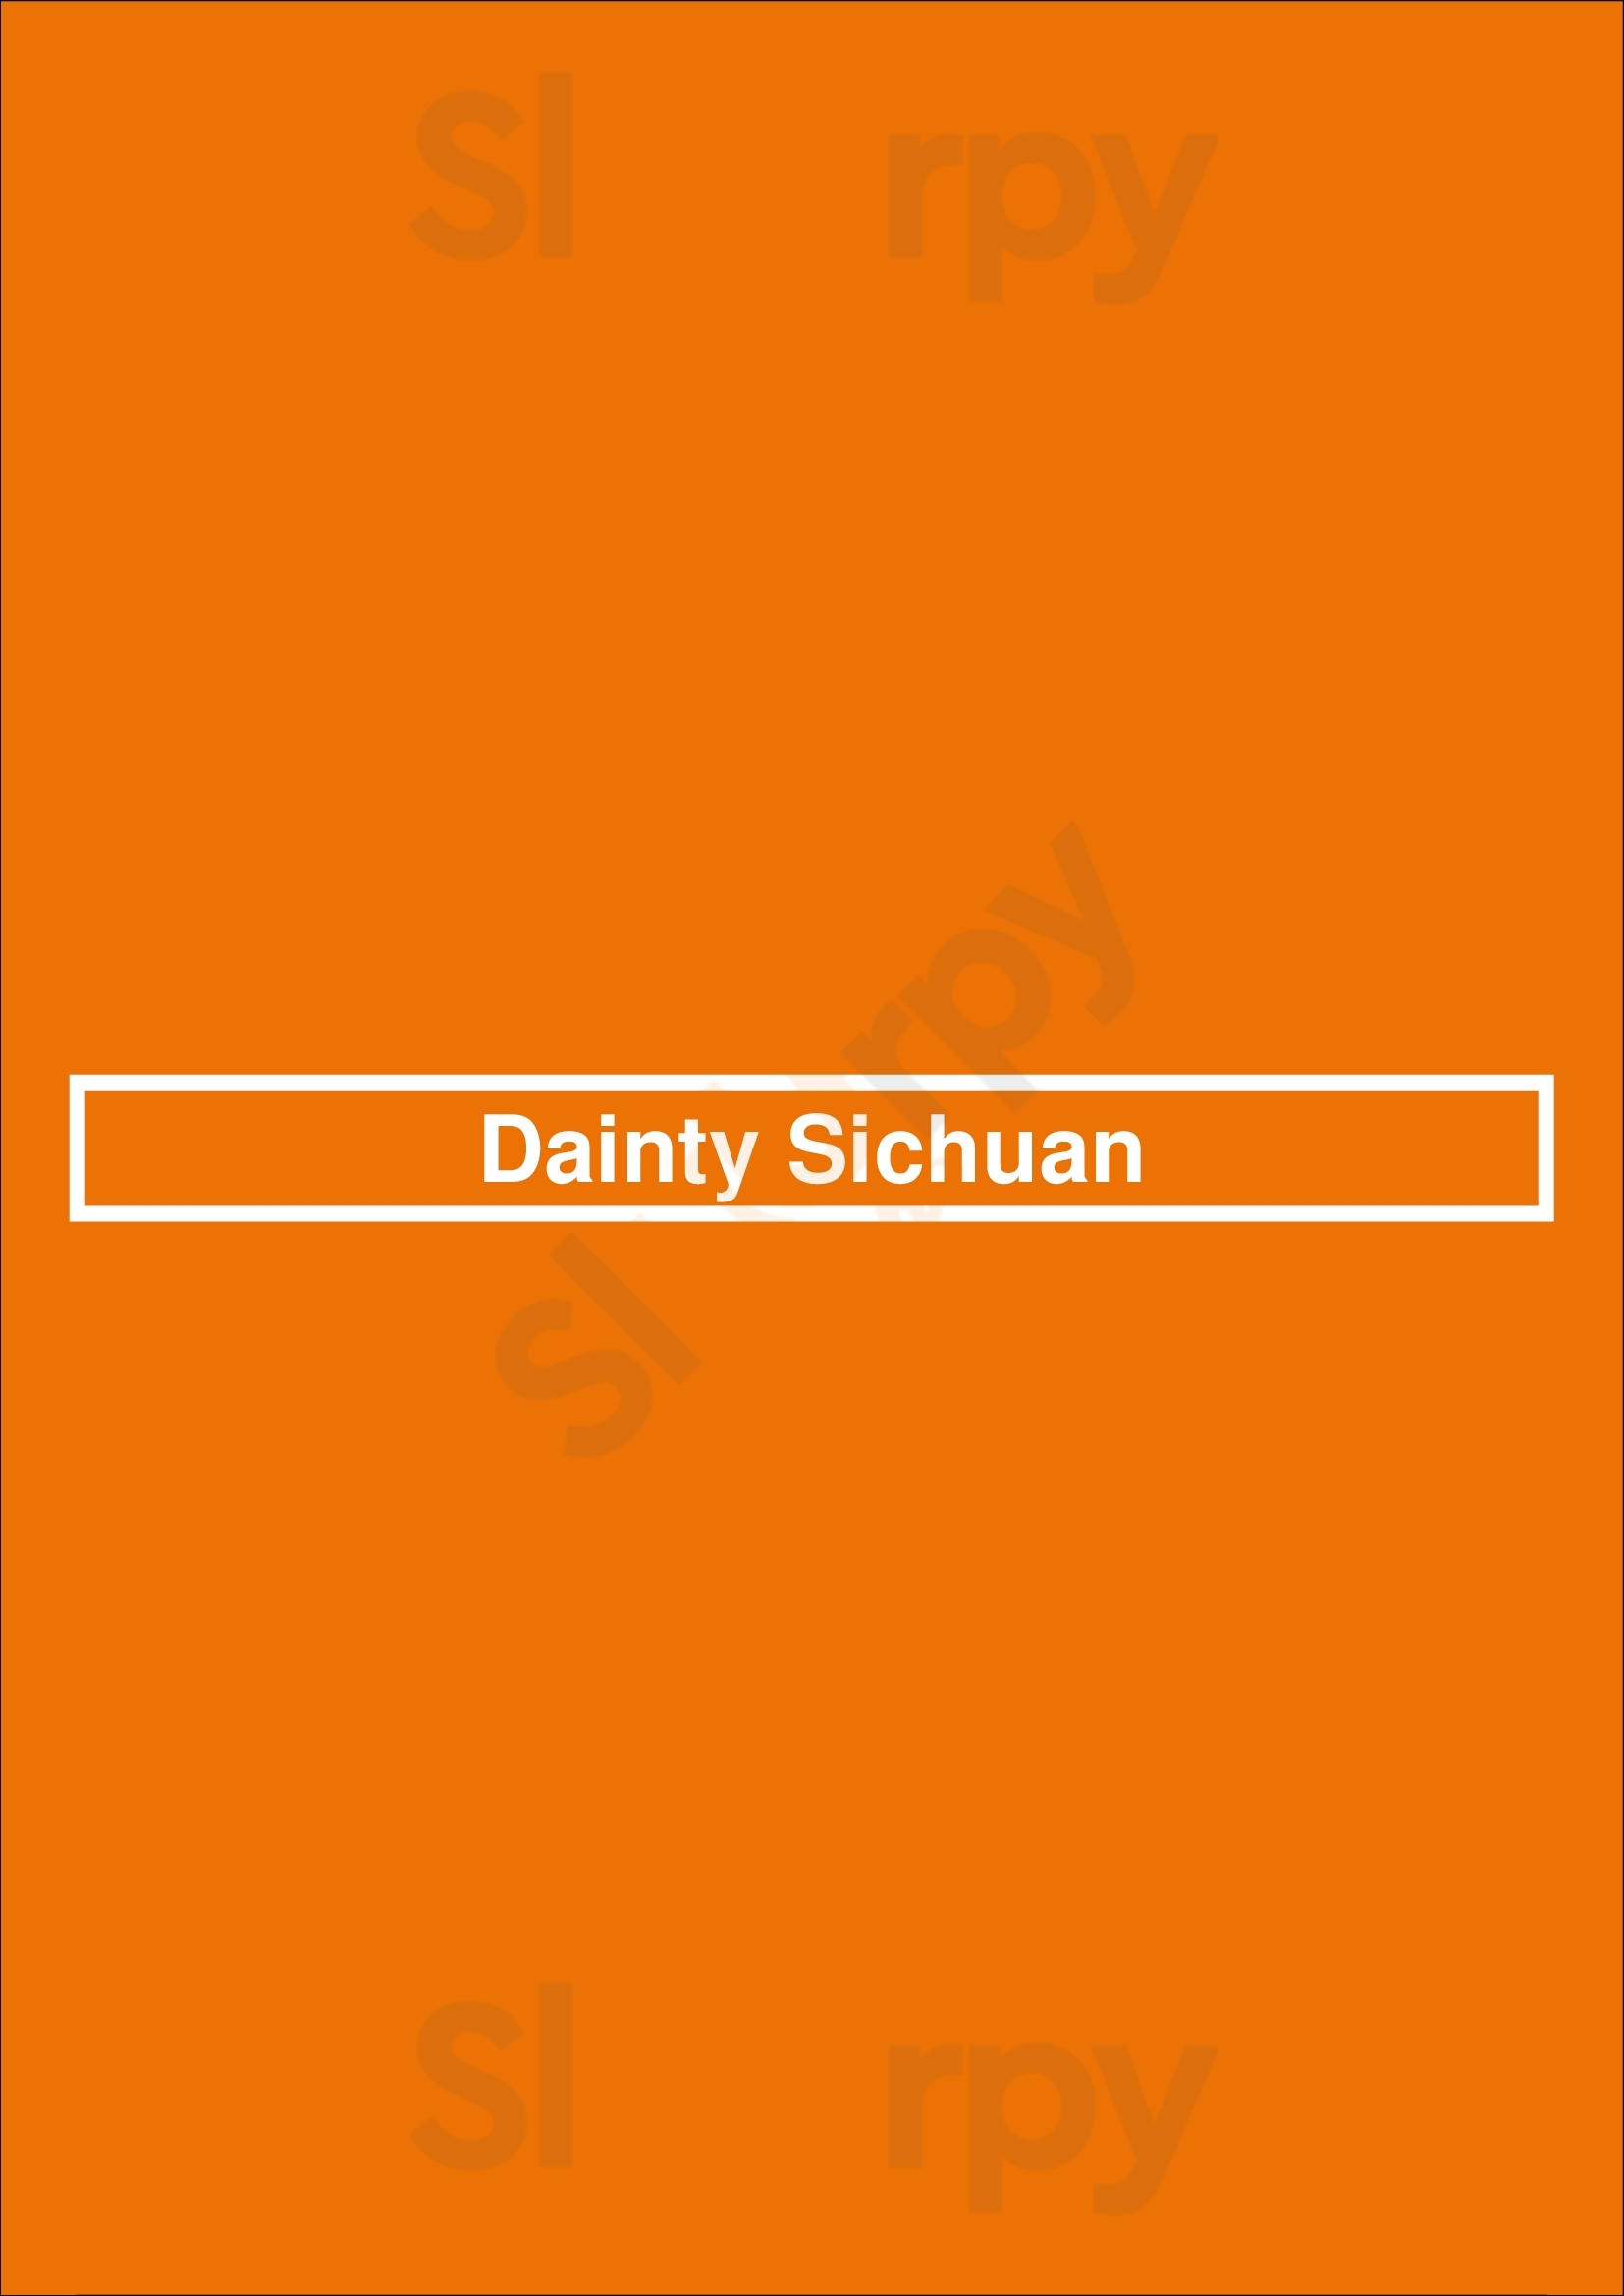 Dainty Sichuan Yarra Menu - 1